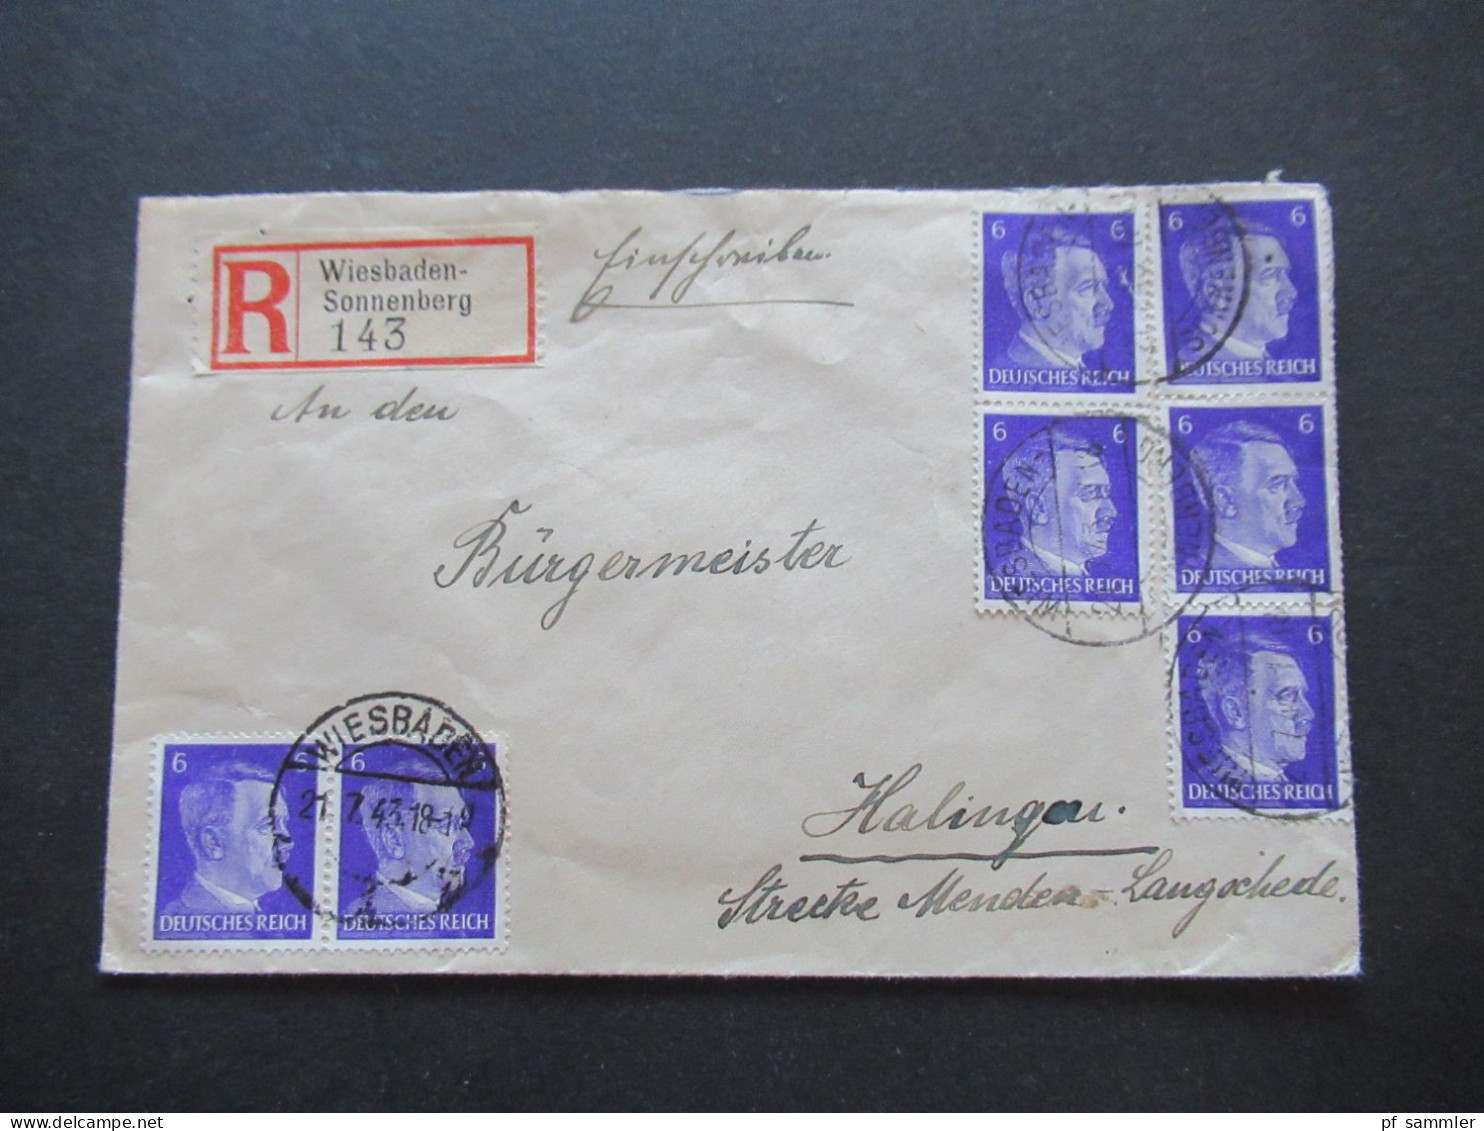 Hitler Nr.785 (7) MeF Einschreiben Wiesbaden Sonnenberg - Halingen Strecke Menden - Langschede Stempel Schwerte (Ruhr) - Postkarten